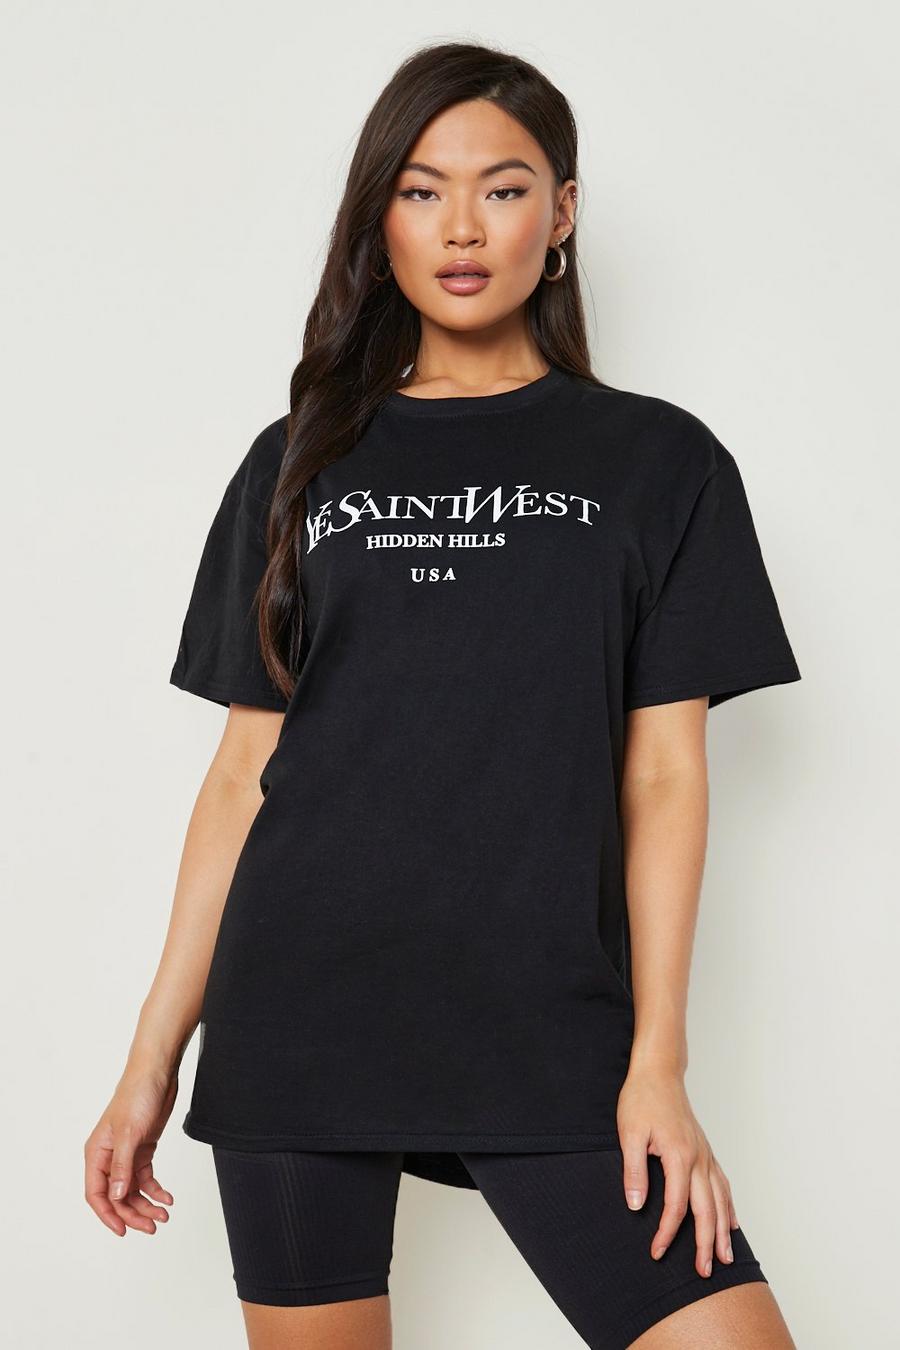 Black Ye Saint West Oversized T-shirt